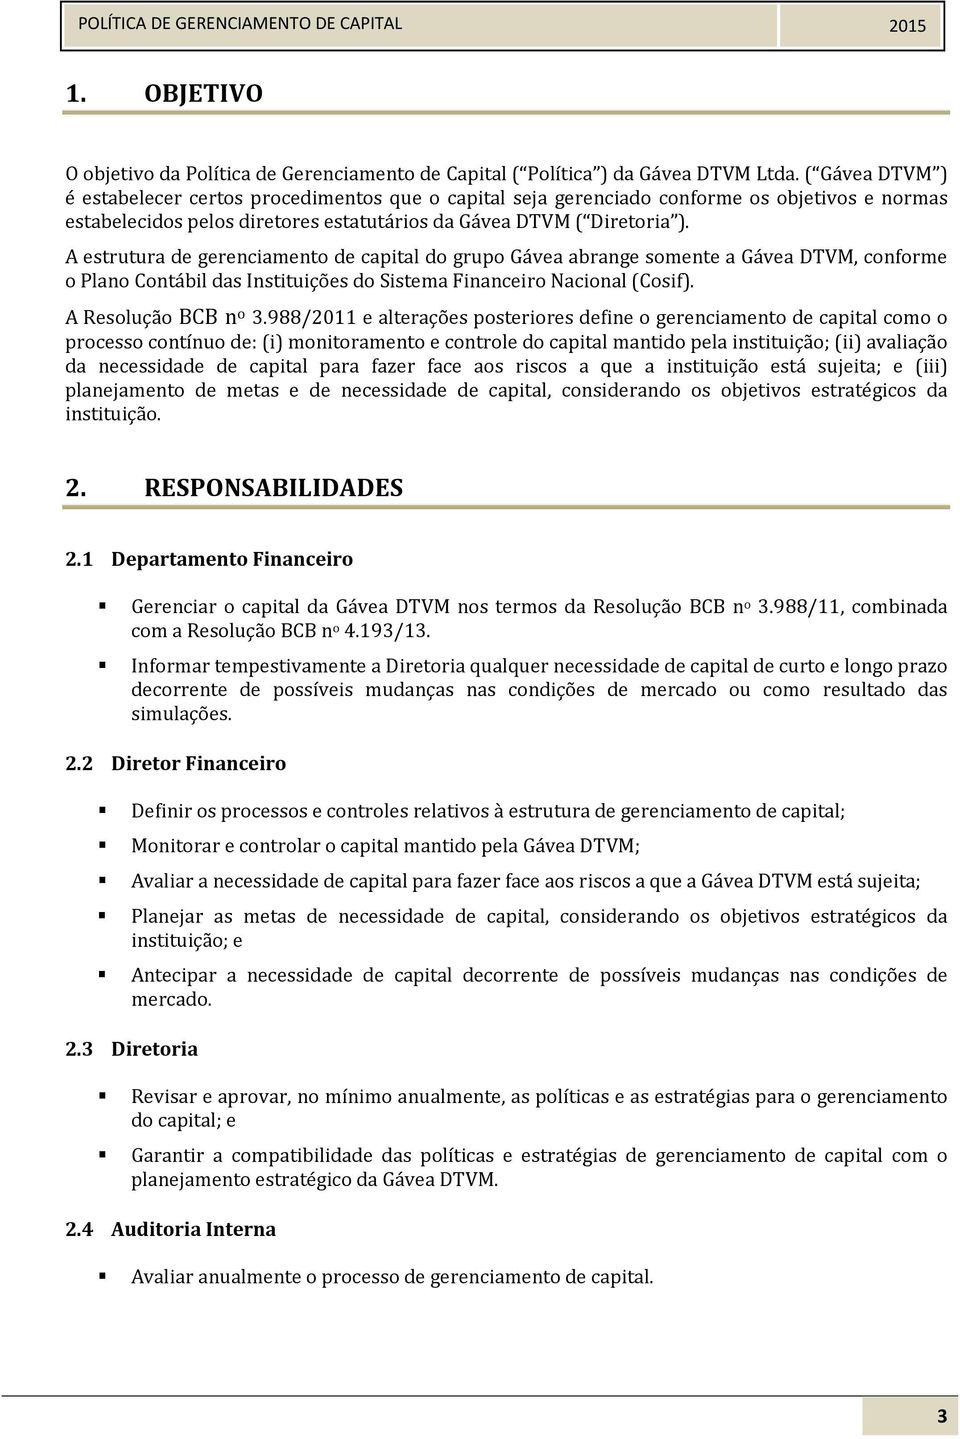 A estrutura de gerenciamento de capital do grupo Gávea abrange somente a Gávea DTVM, conforme o Plano Contábil das Instituições do Sistema Financeiro Nacional (Cosif). A Resolução BCB n o 3.